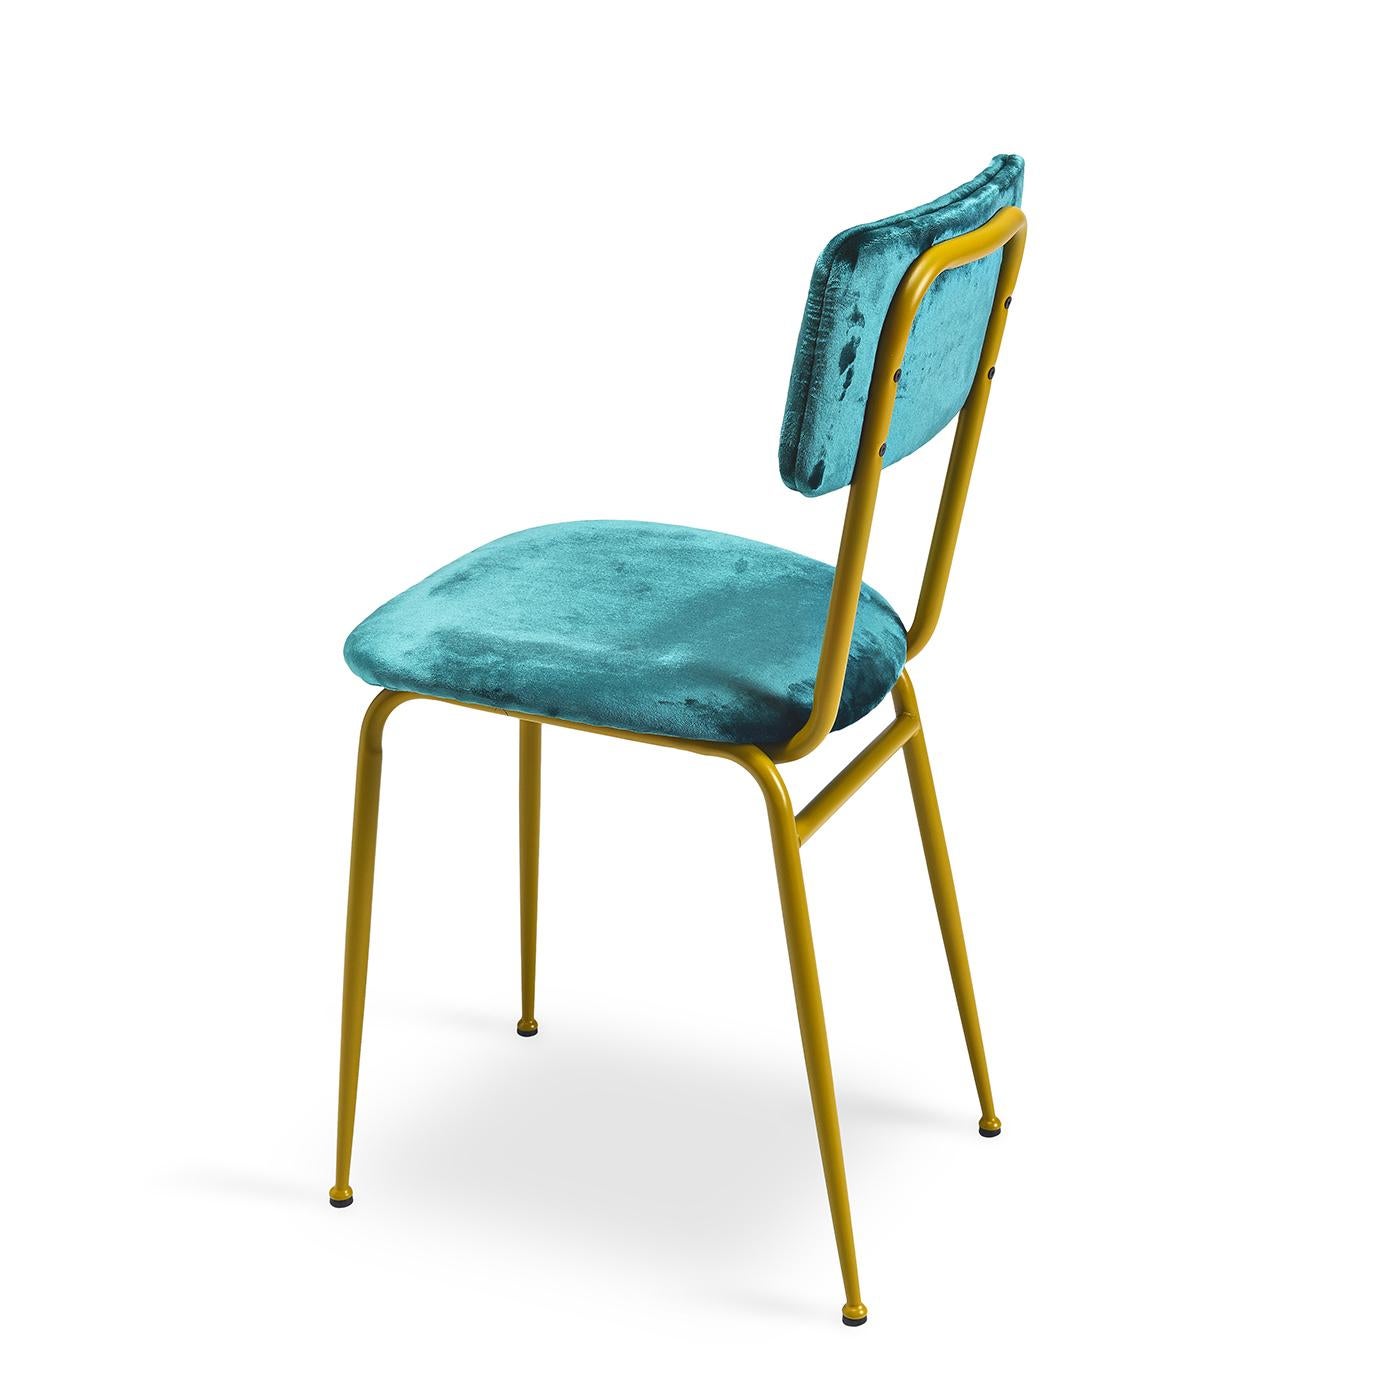 Bringen Sie einen Hauch von Glamour in Ihren modernen Wohnbereich mit dem Stuhl Miss Gina 1. Der elegante Rahmen aus Mehl ist in gebürstetem Kupfer gehalten und mit luxuriösem tealfarbenem Samt gepolstert. Die Polsterung von Sitz und Rückenlehne